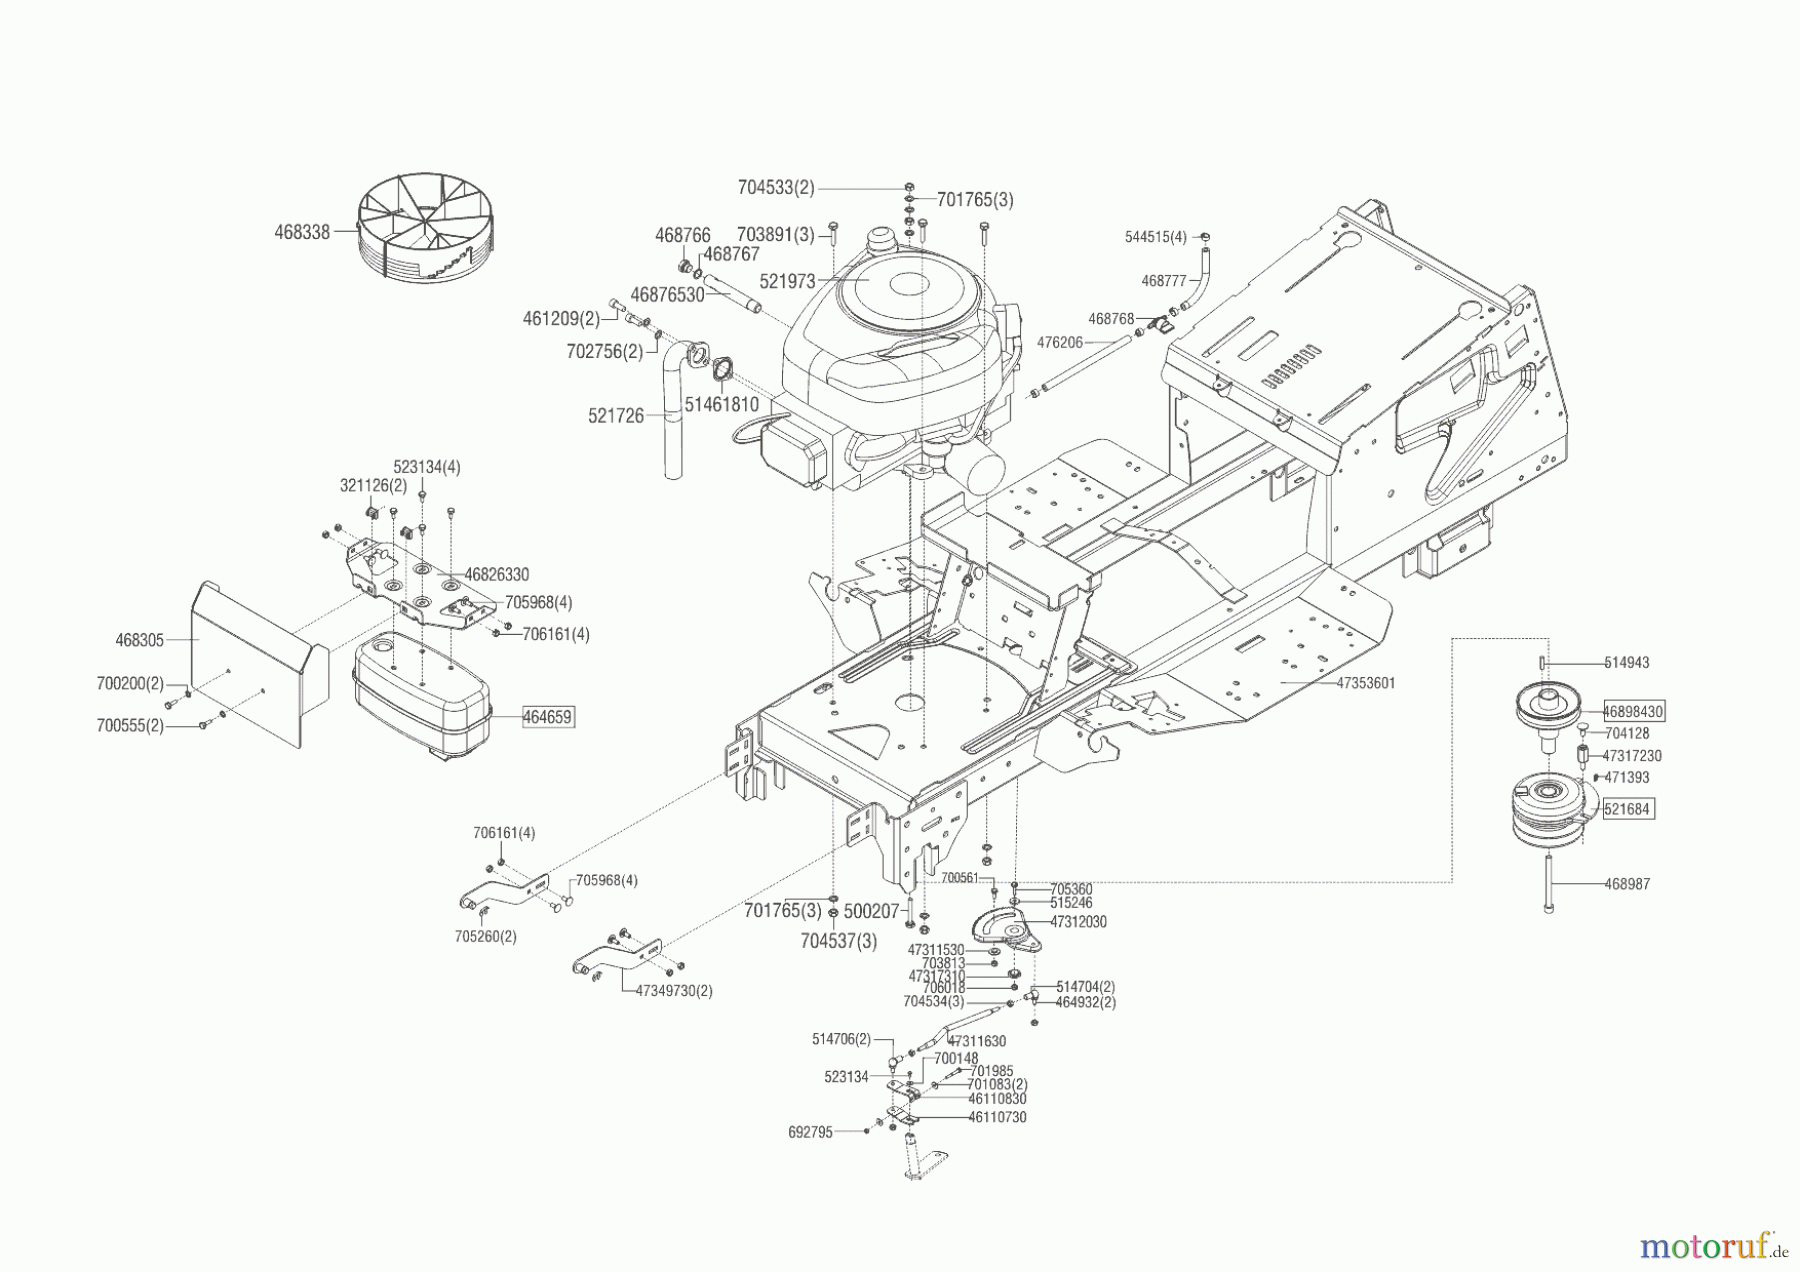  Powerline Gartentechnik Rasentraktor T 18-95.4 HD  ab 02/2019 Seite 2